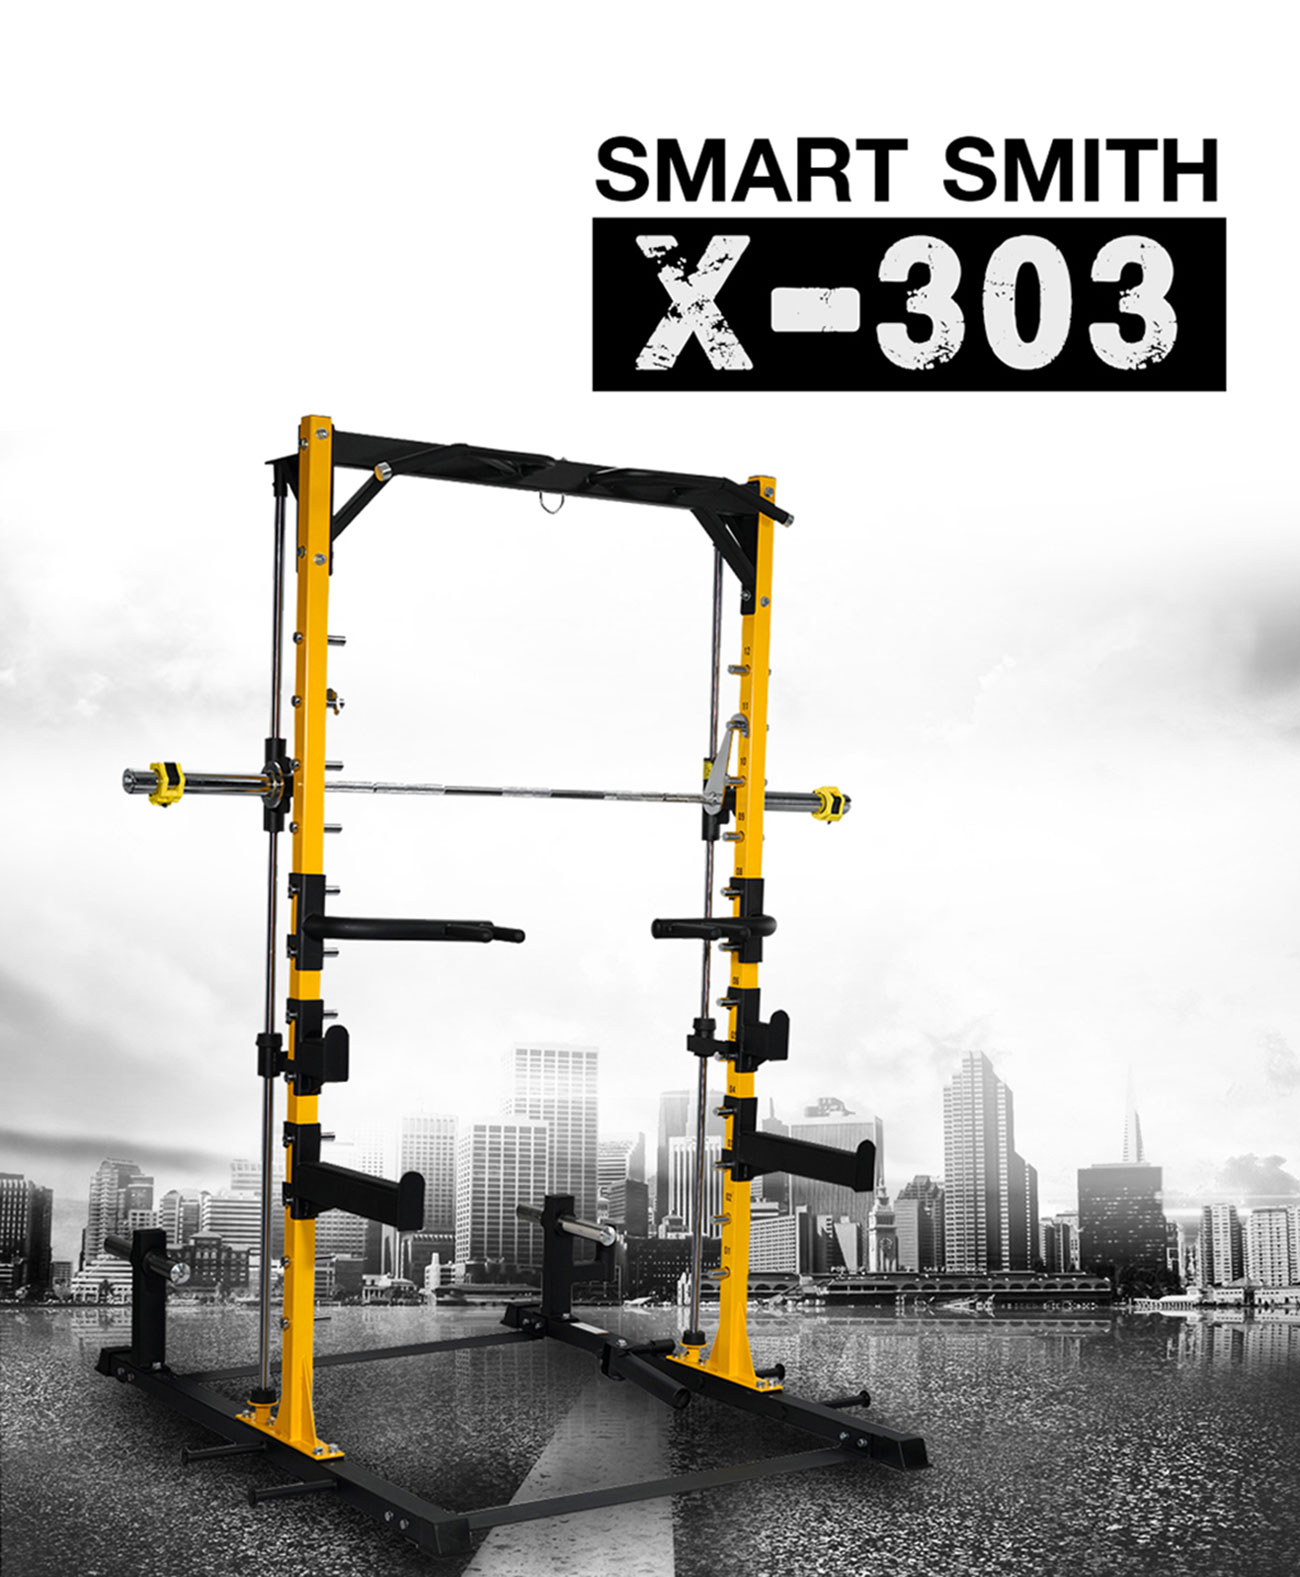 Smart Smith สมิท แมชชีน รุ่น X-303